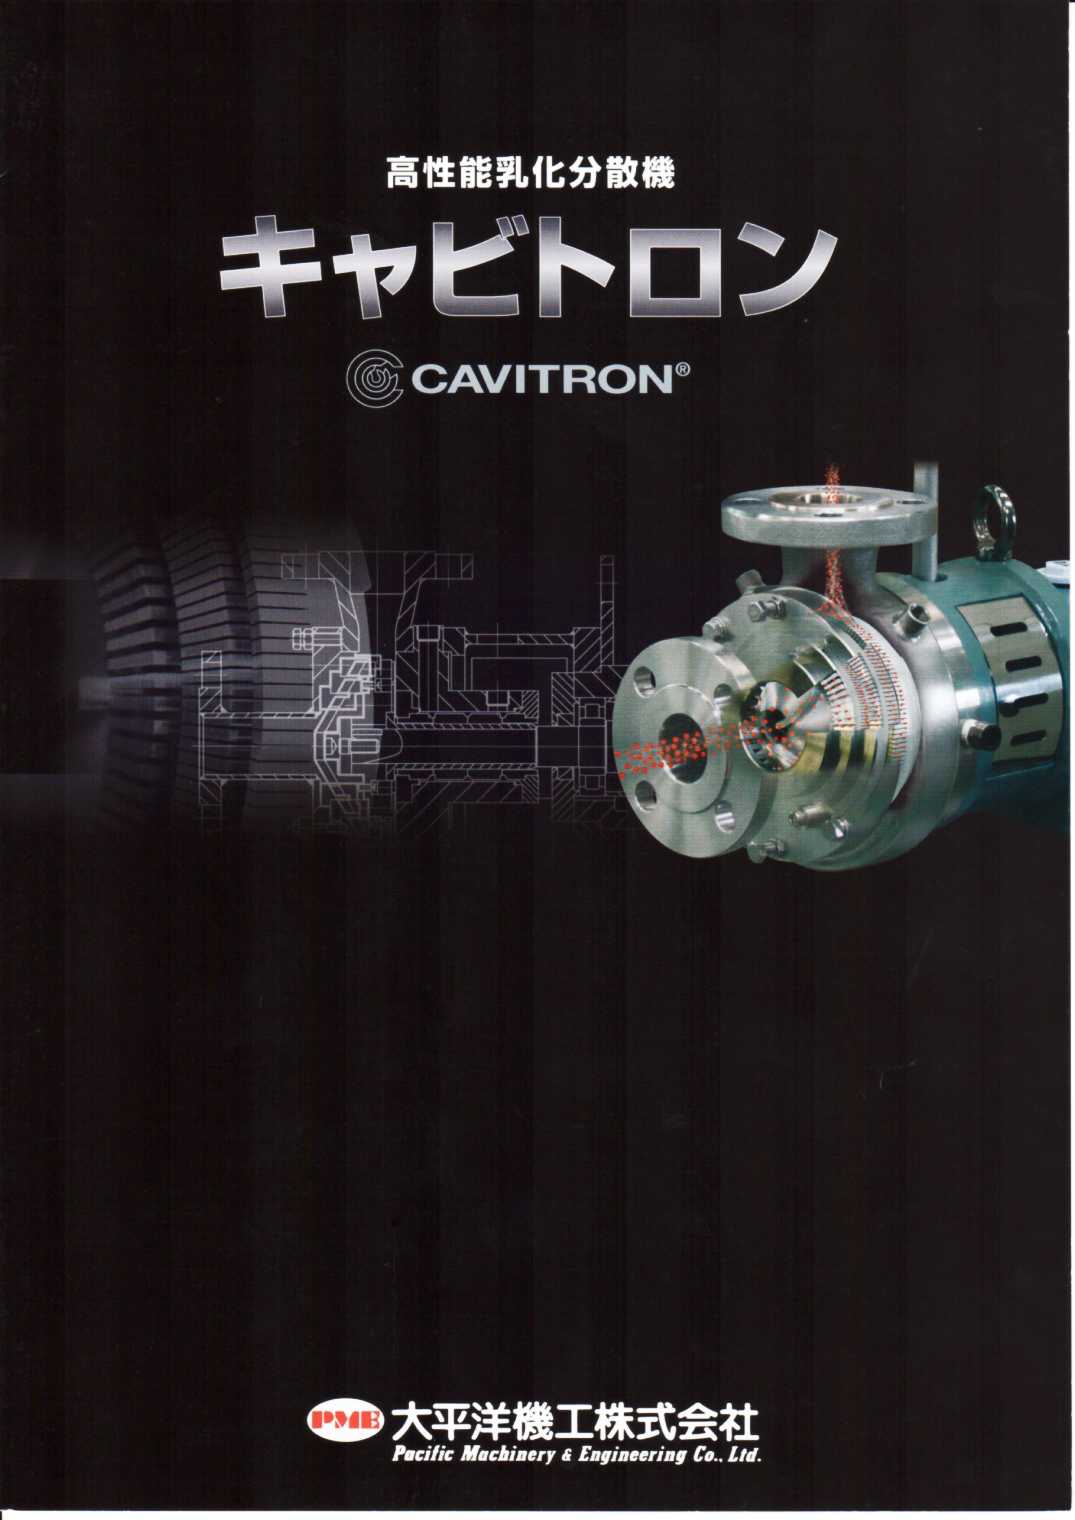 高性能乳化分散機 キャビトロンのカタログ